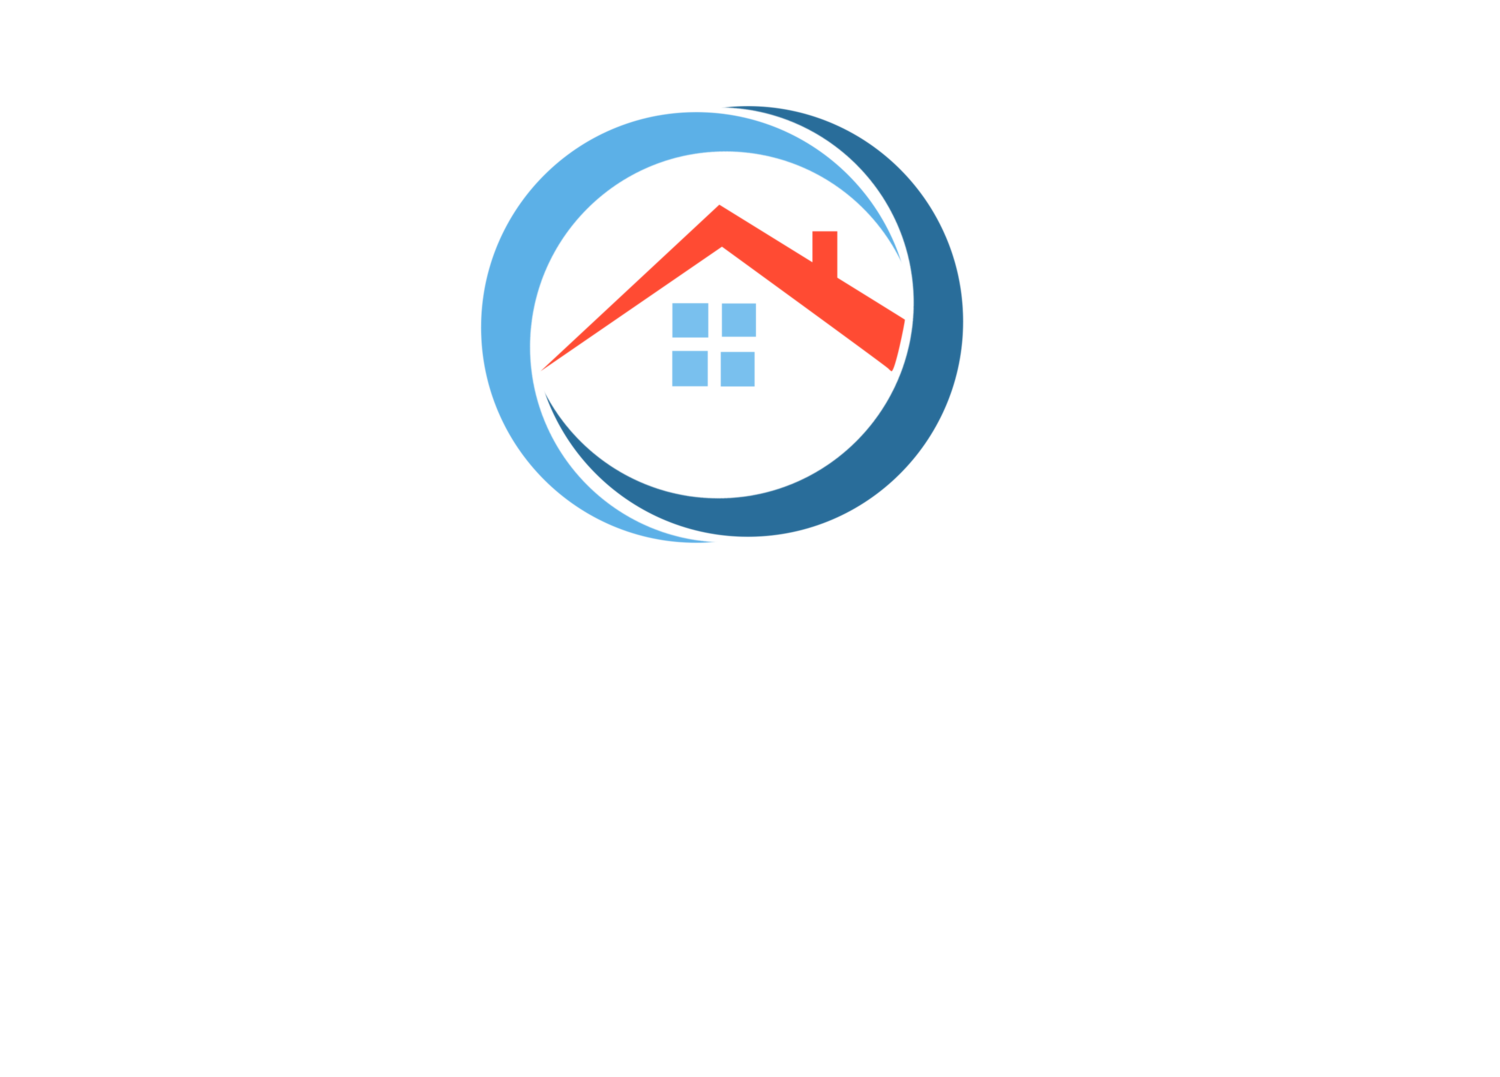 Crescent Signature Homes